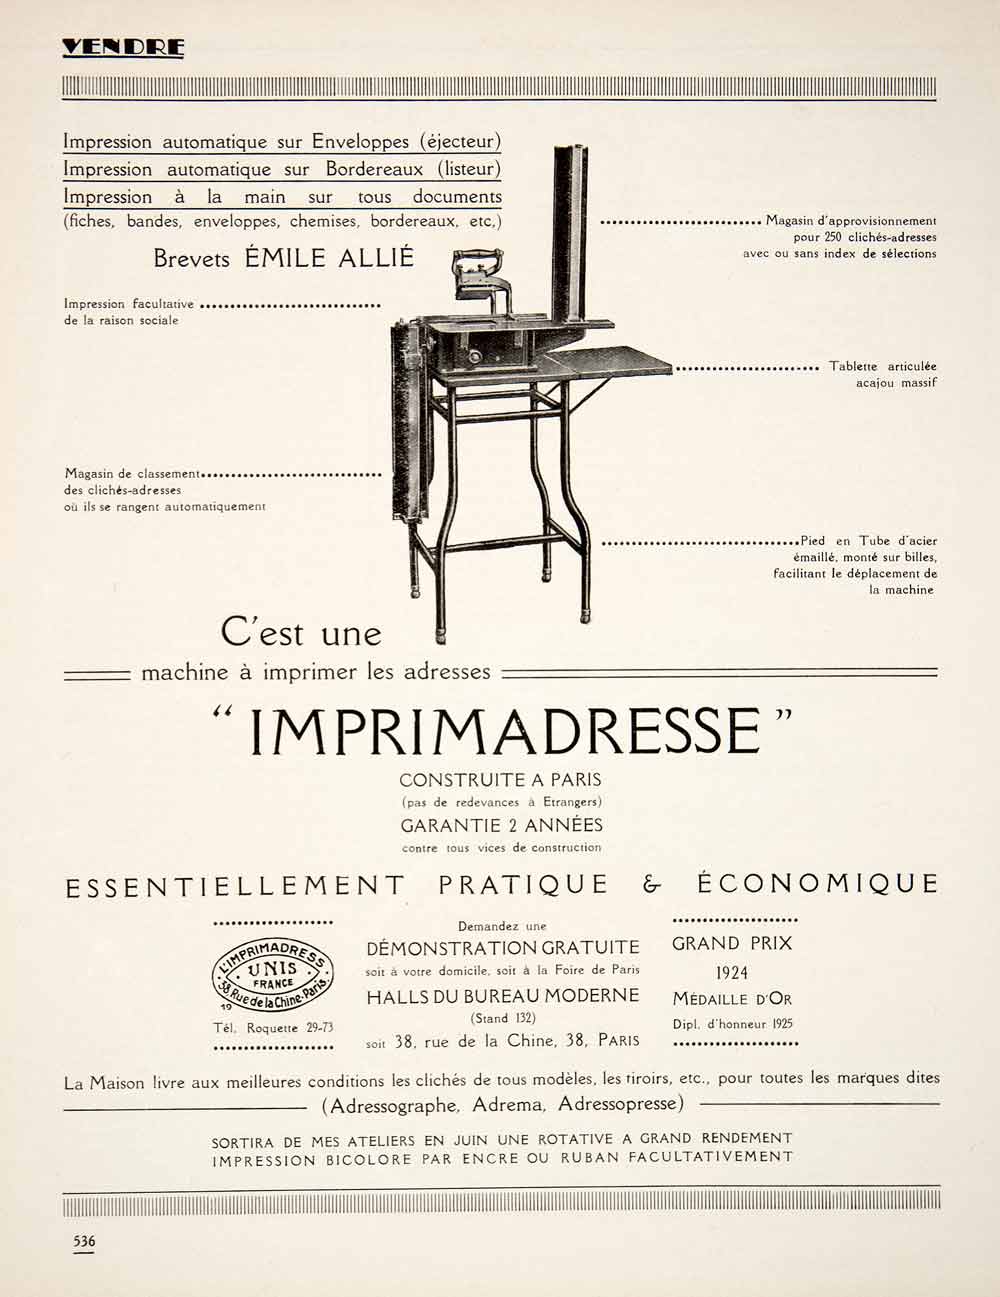 1925 Ad Imprimadresse Emile Allie Adressing Machine Imprinter 38 Rue Chine VEN3